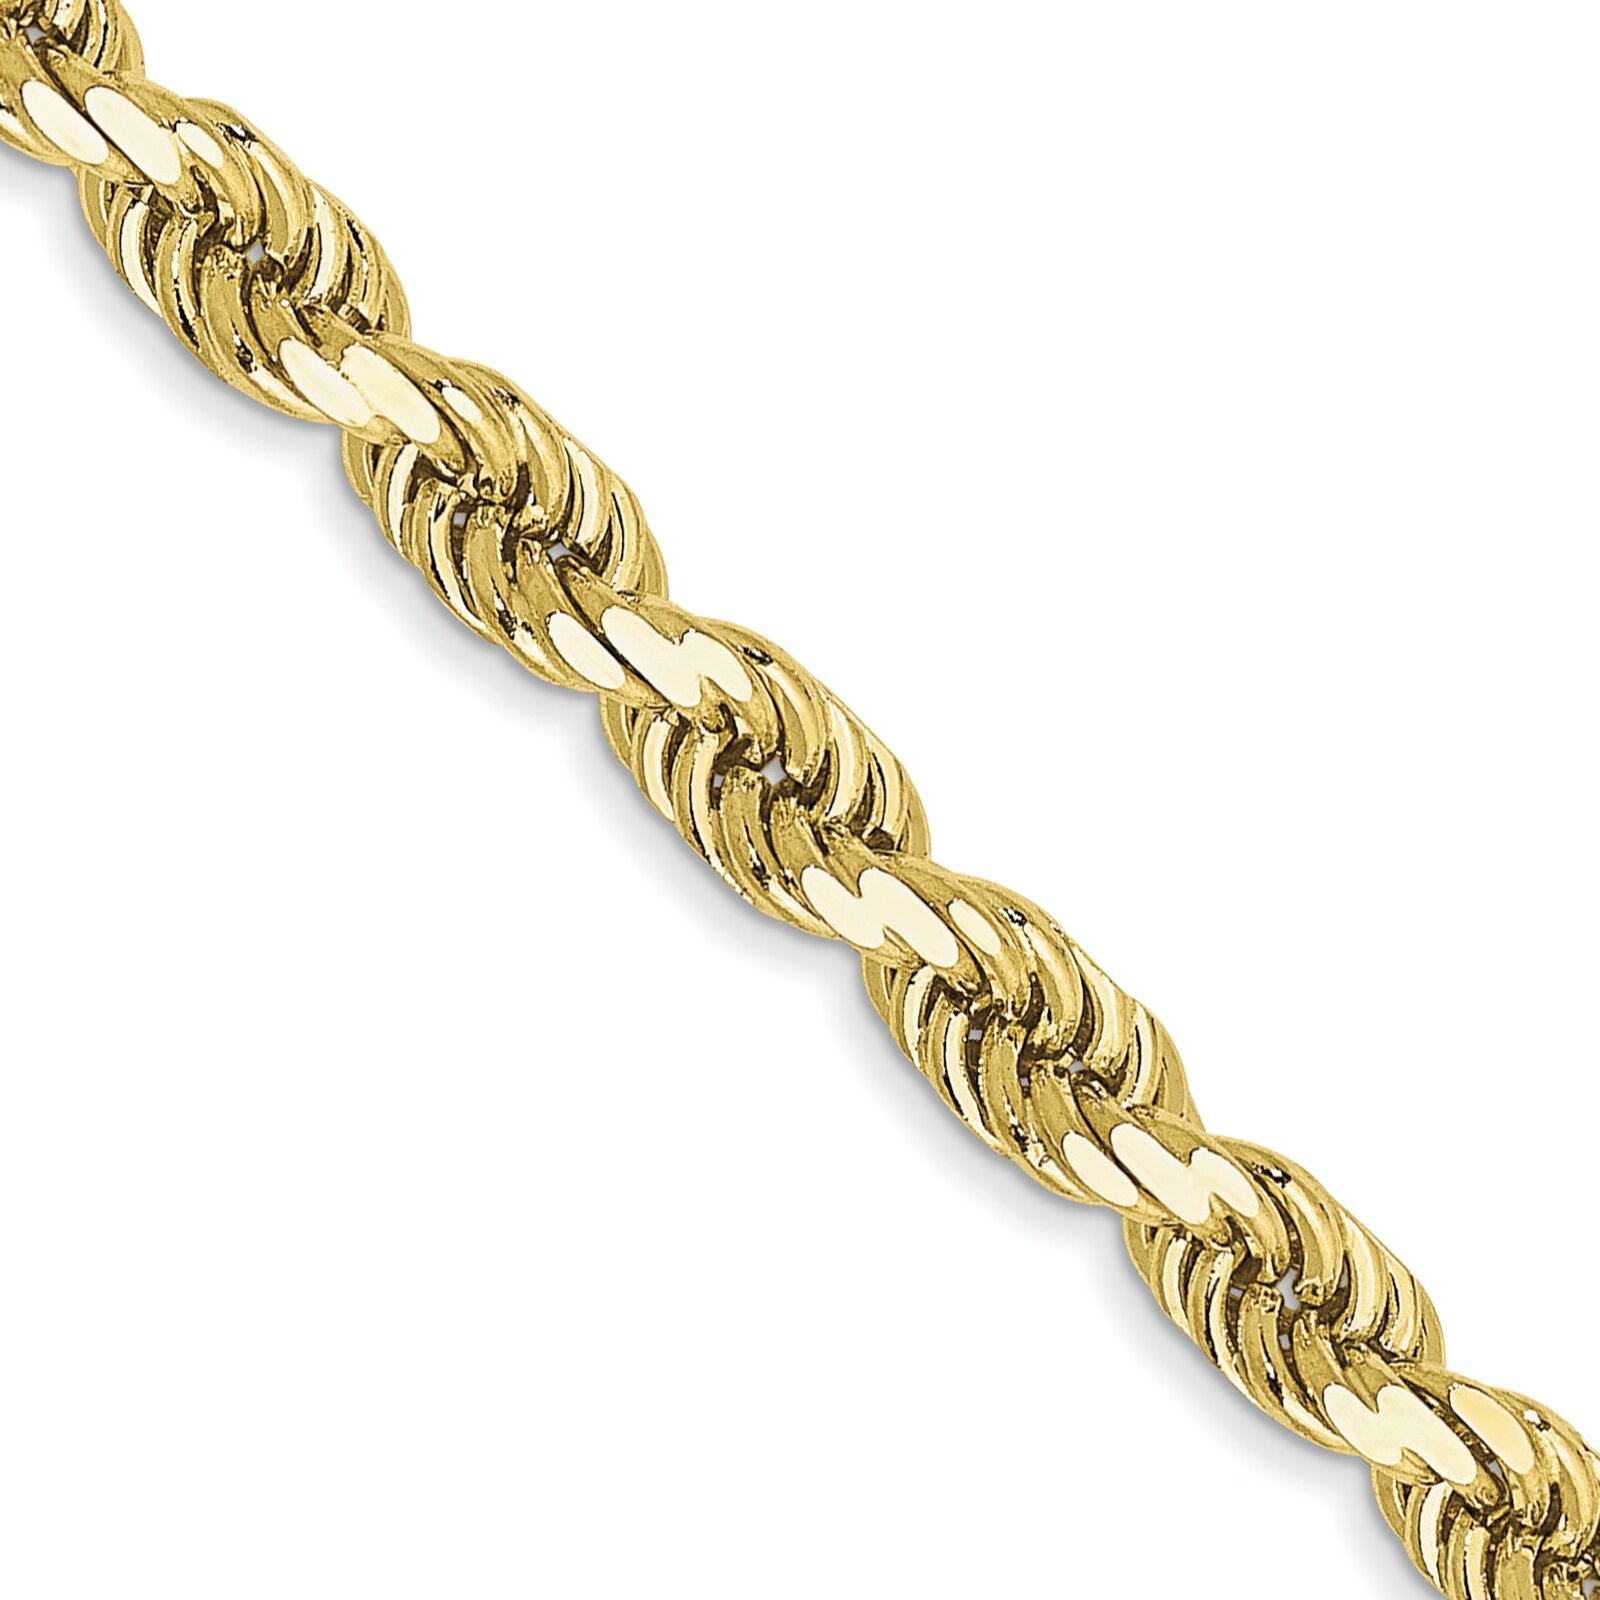 Findingking 10K Gold 3.5mm Rope Chain Bracelet 8" FindingKing